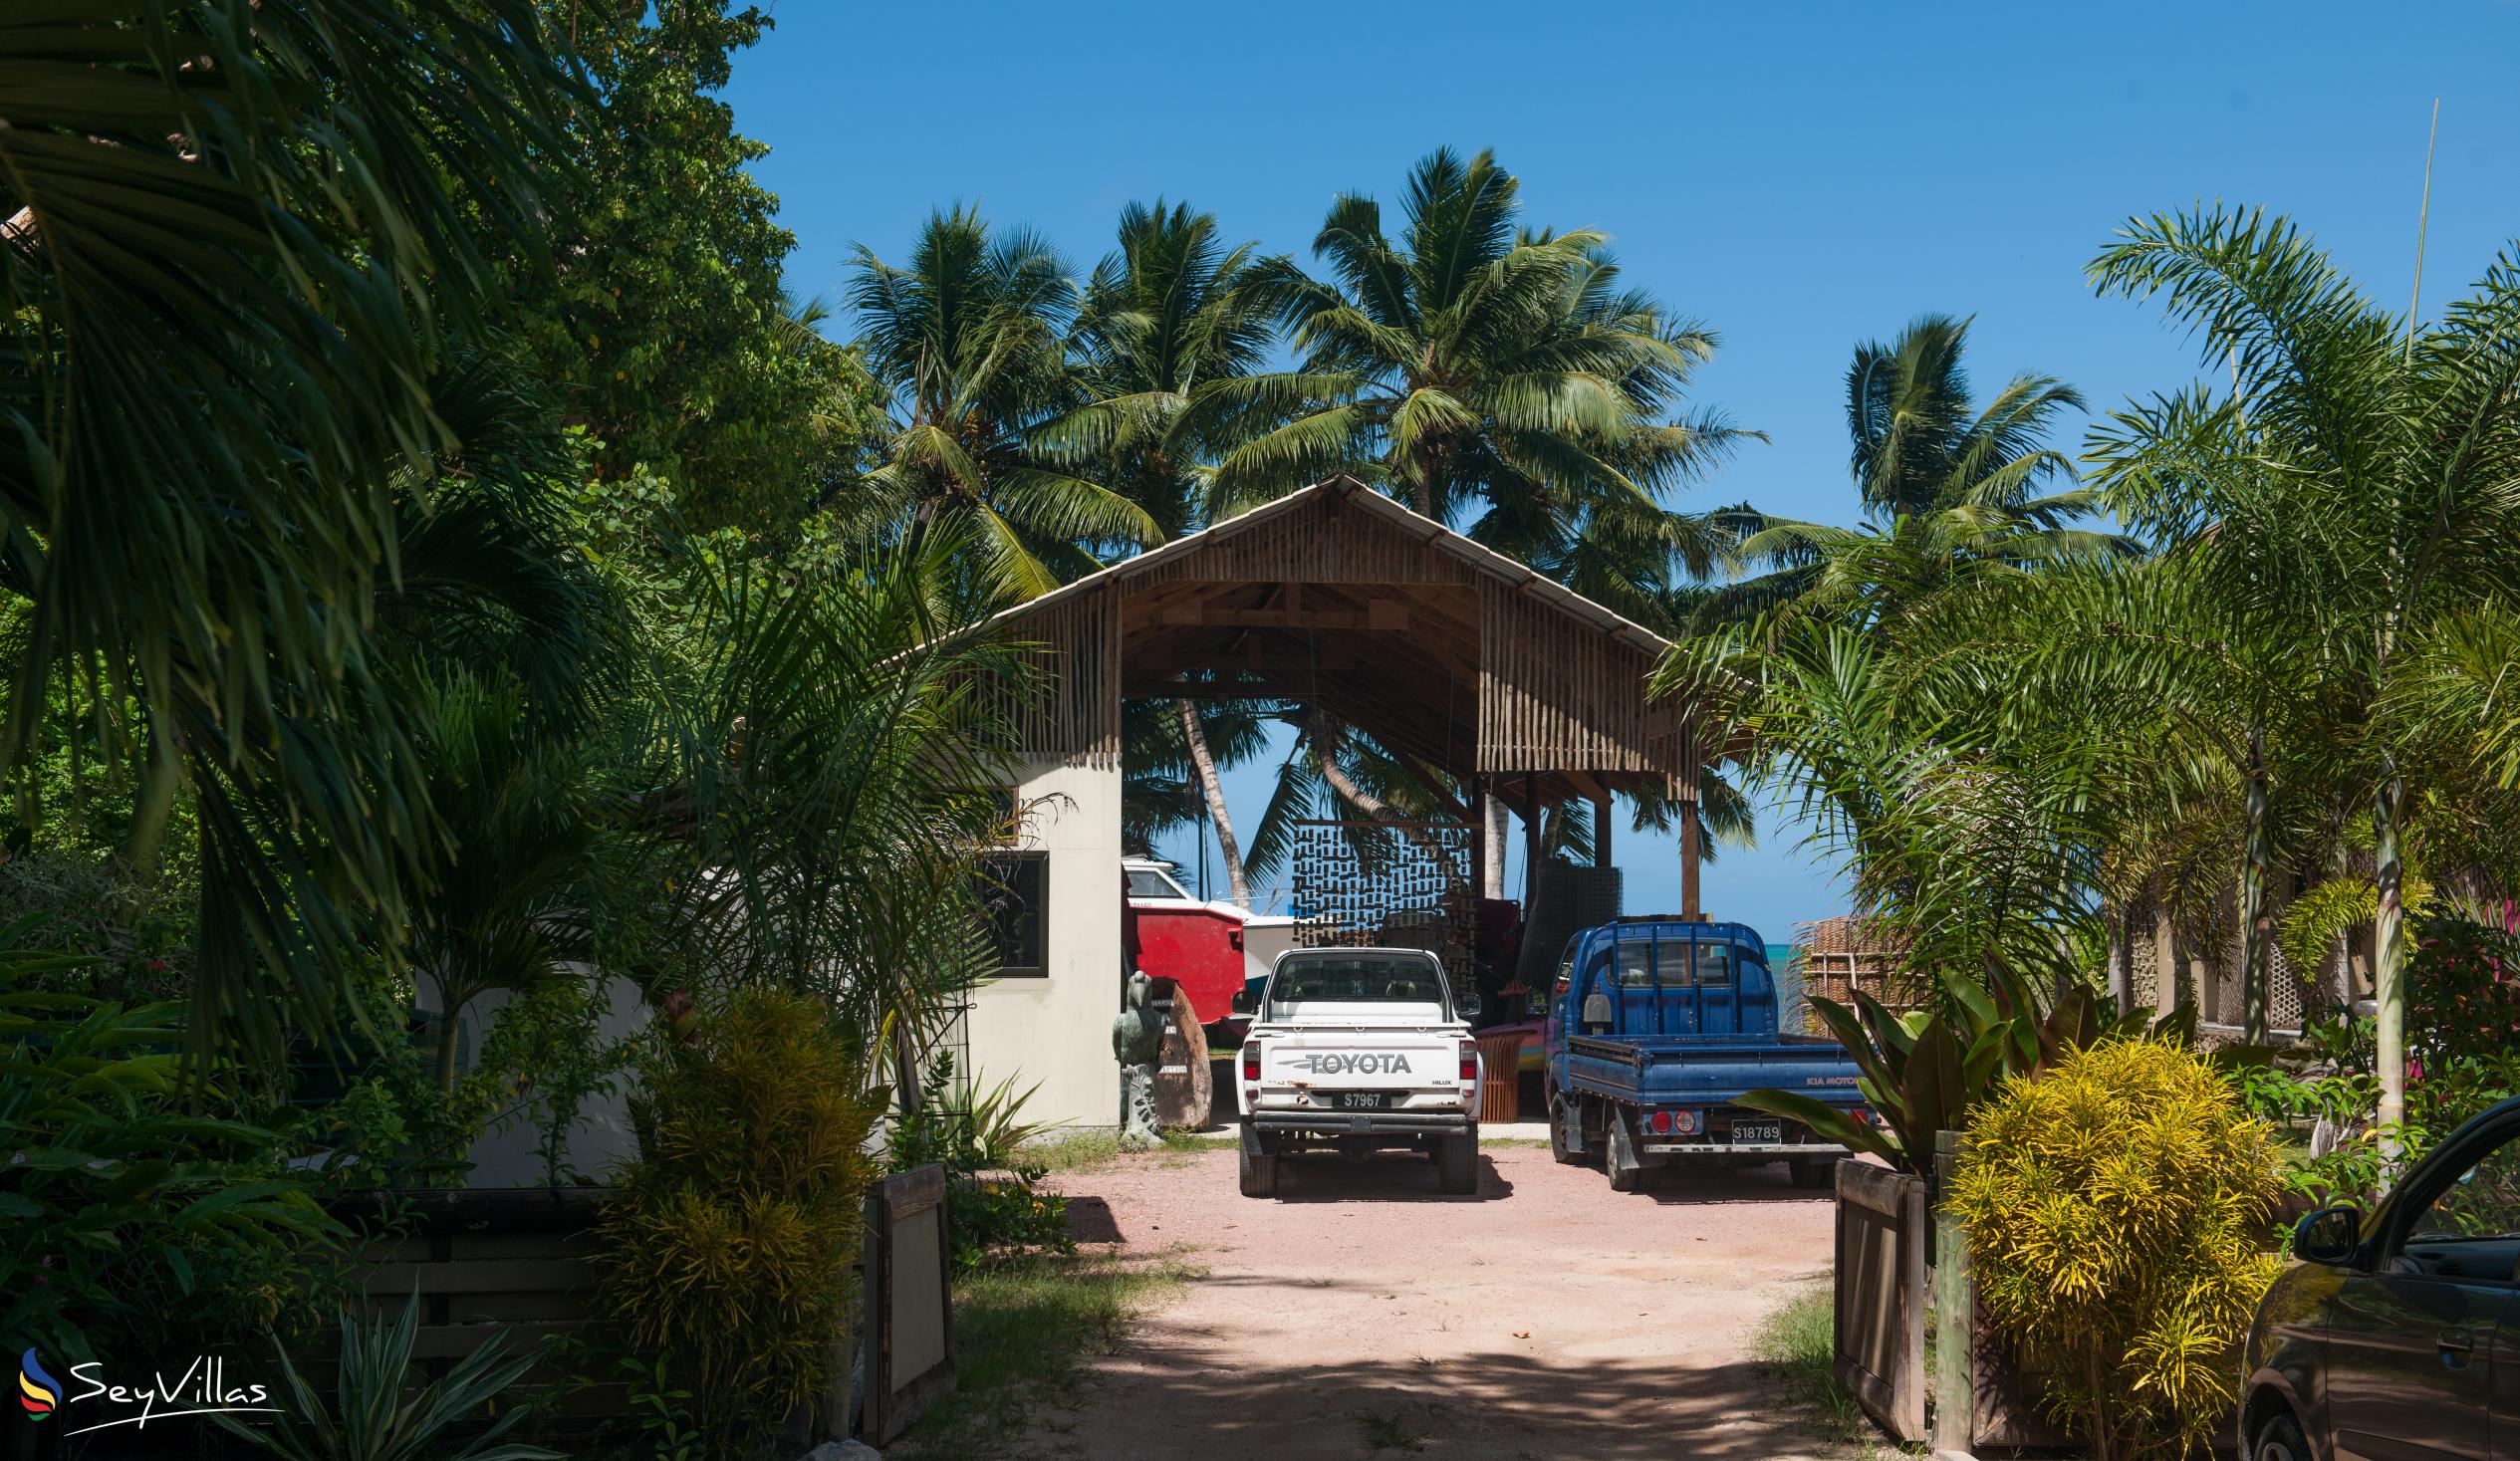 Foto 41: Villas des Alizes - Lage - Praslin (Seychellen)